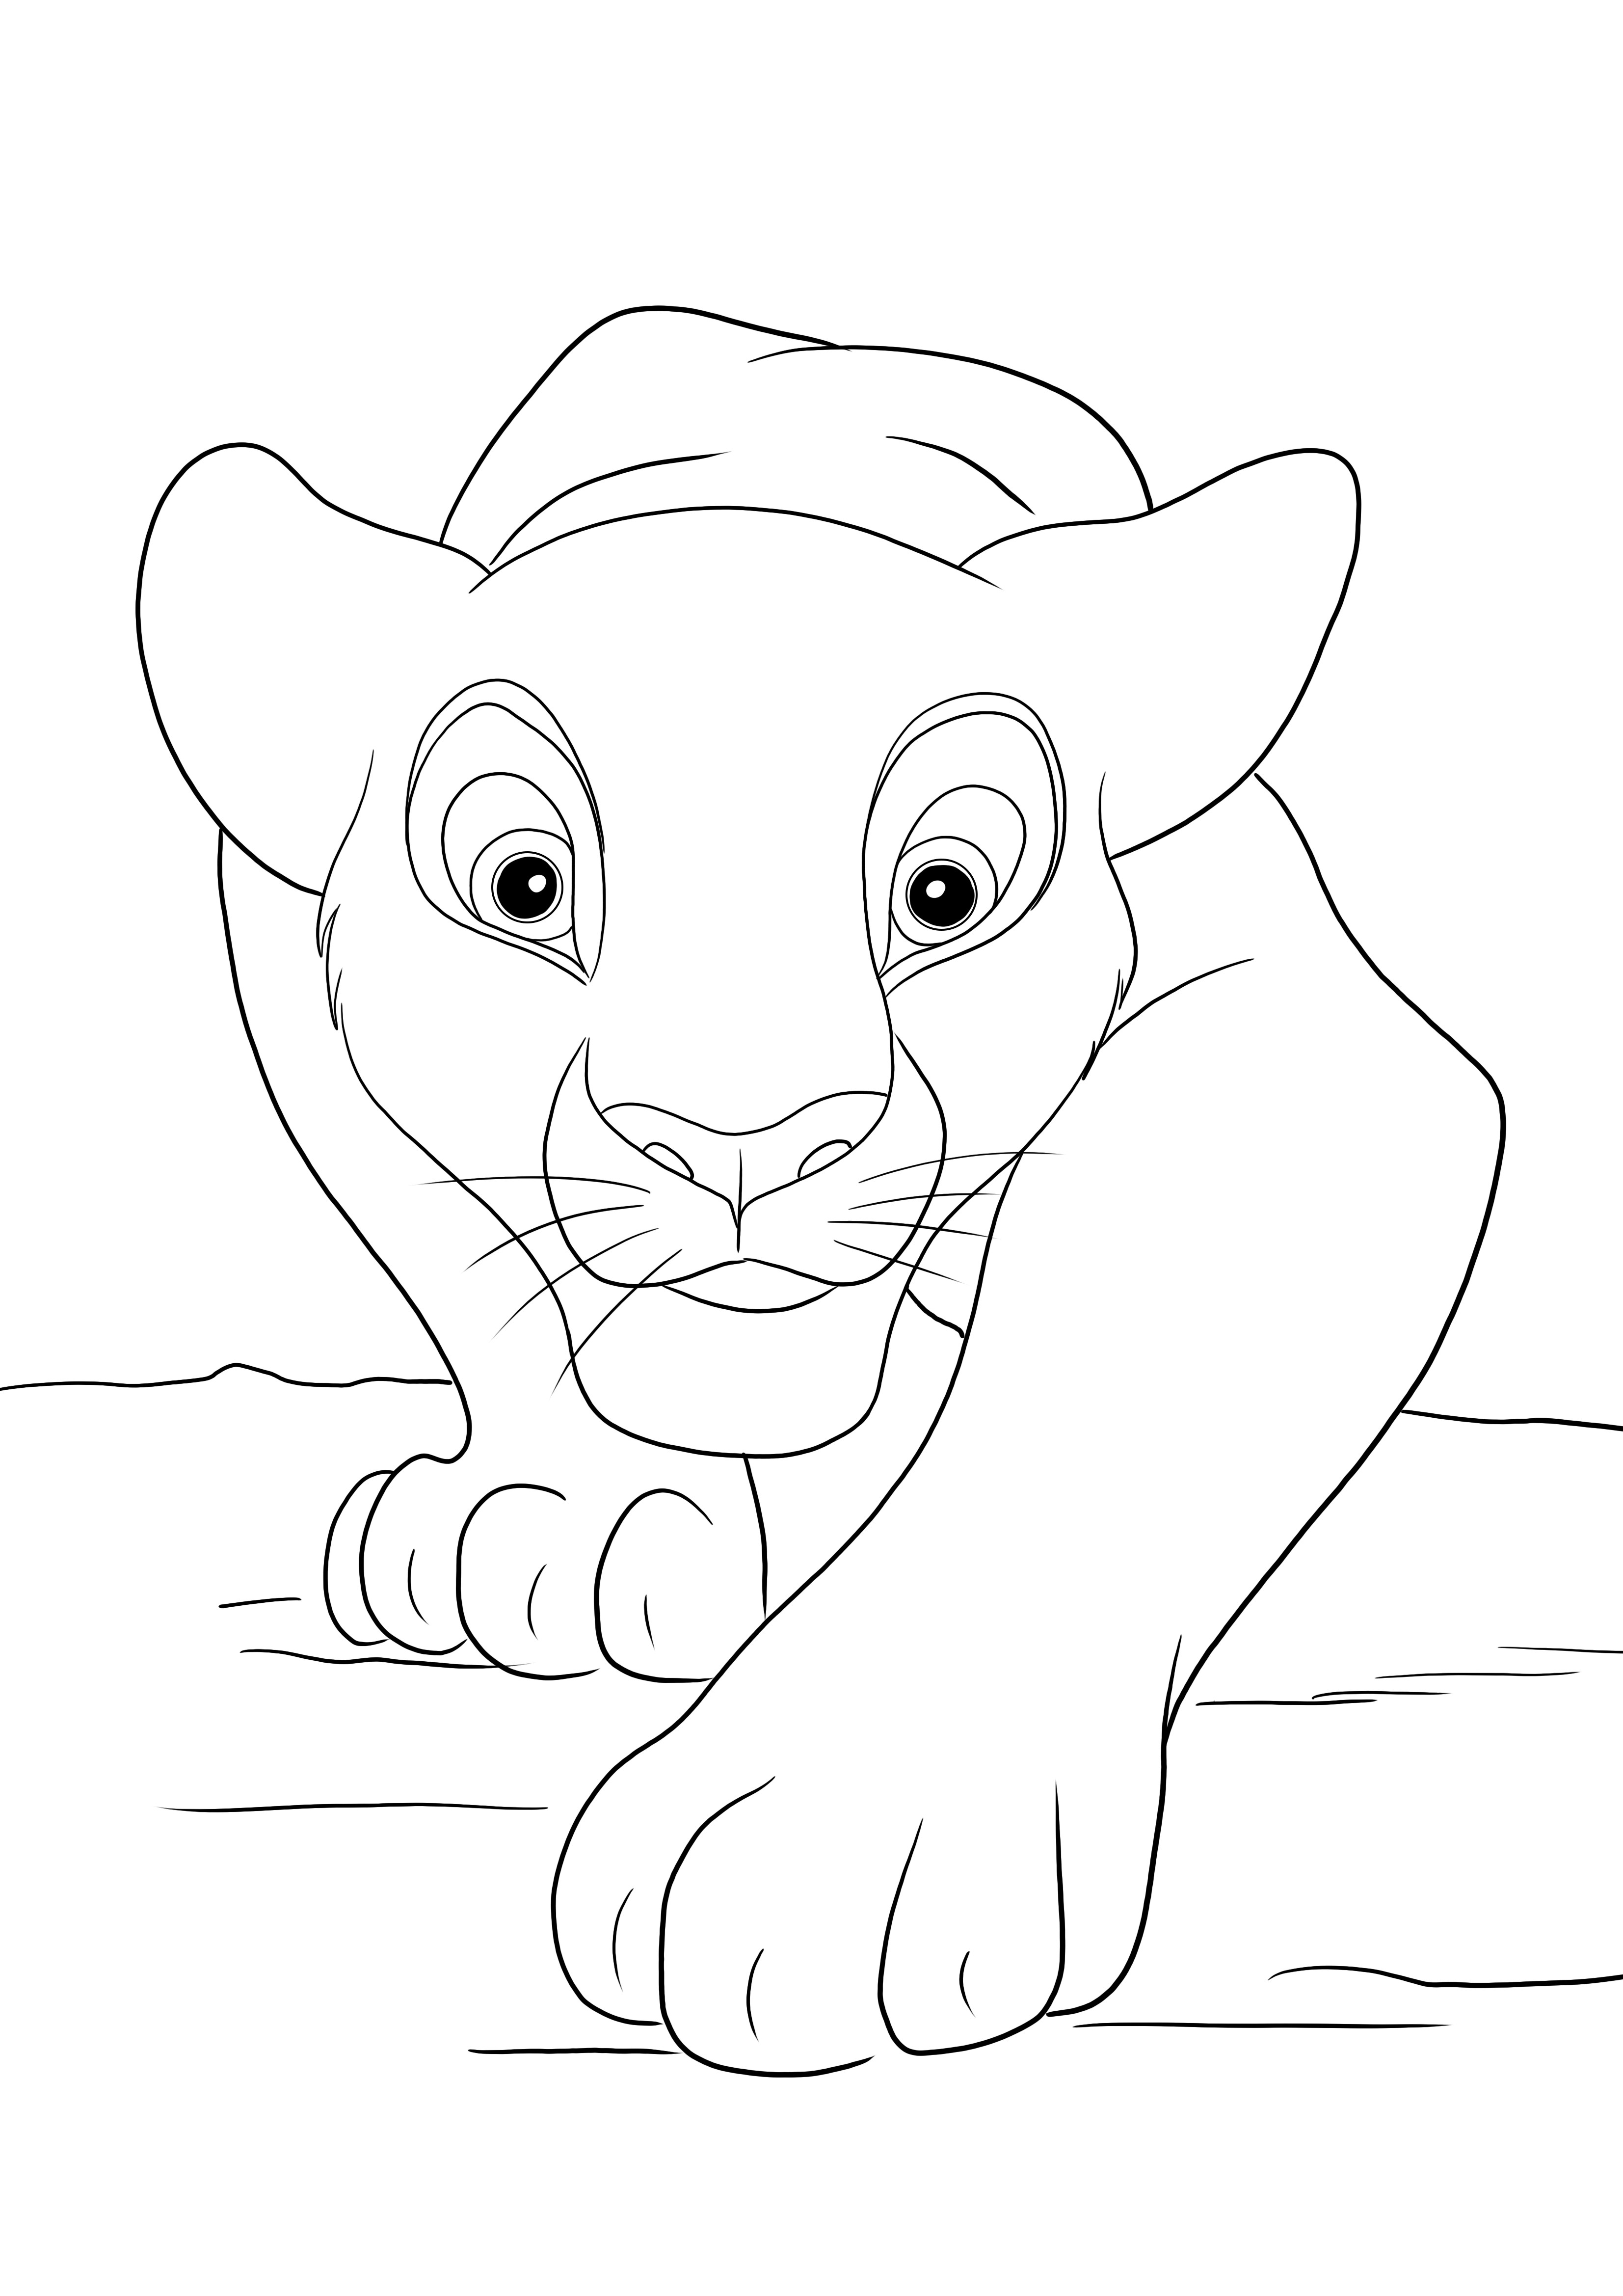 Simba vadászat színező oldal ingyenesen kinyomtatható vagy menthető későbbi képhez